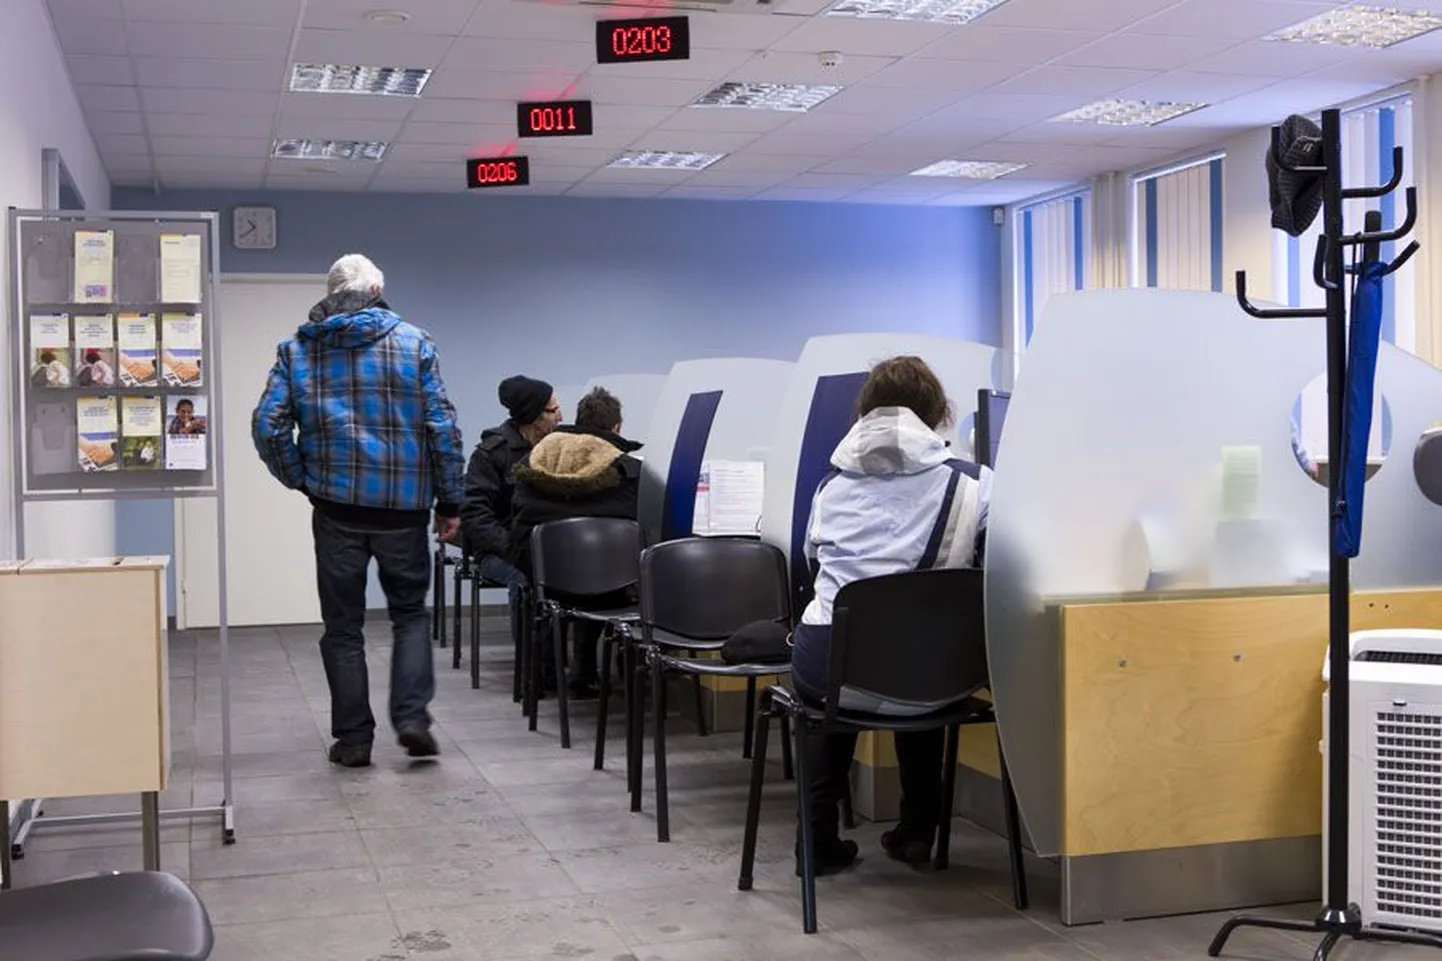 Rahvasuus passilauaks hüütav teenindusbüroo on Viljandis riigiasutuste esindustest üks kasutatavamaid.